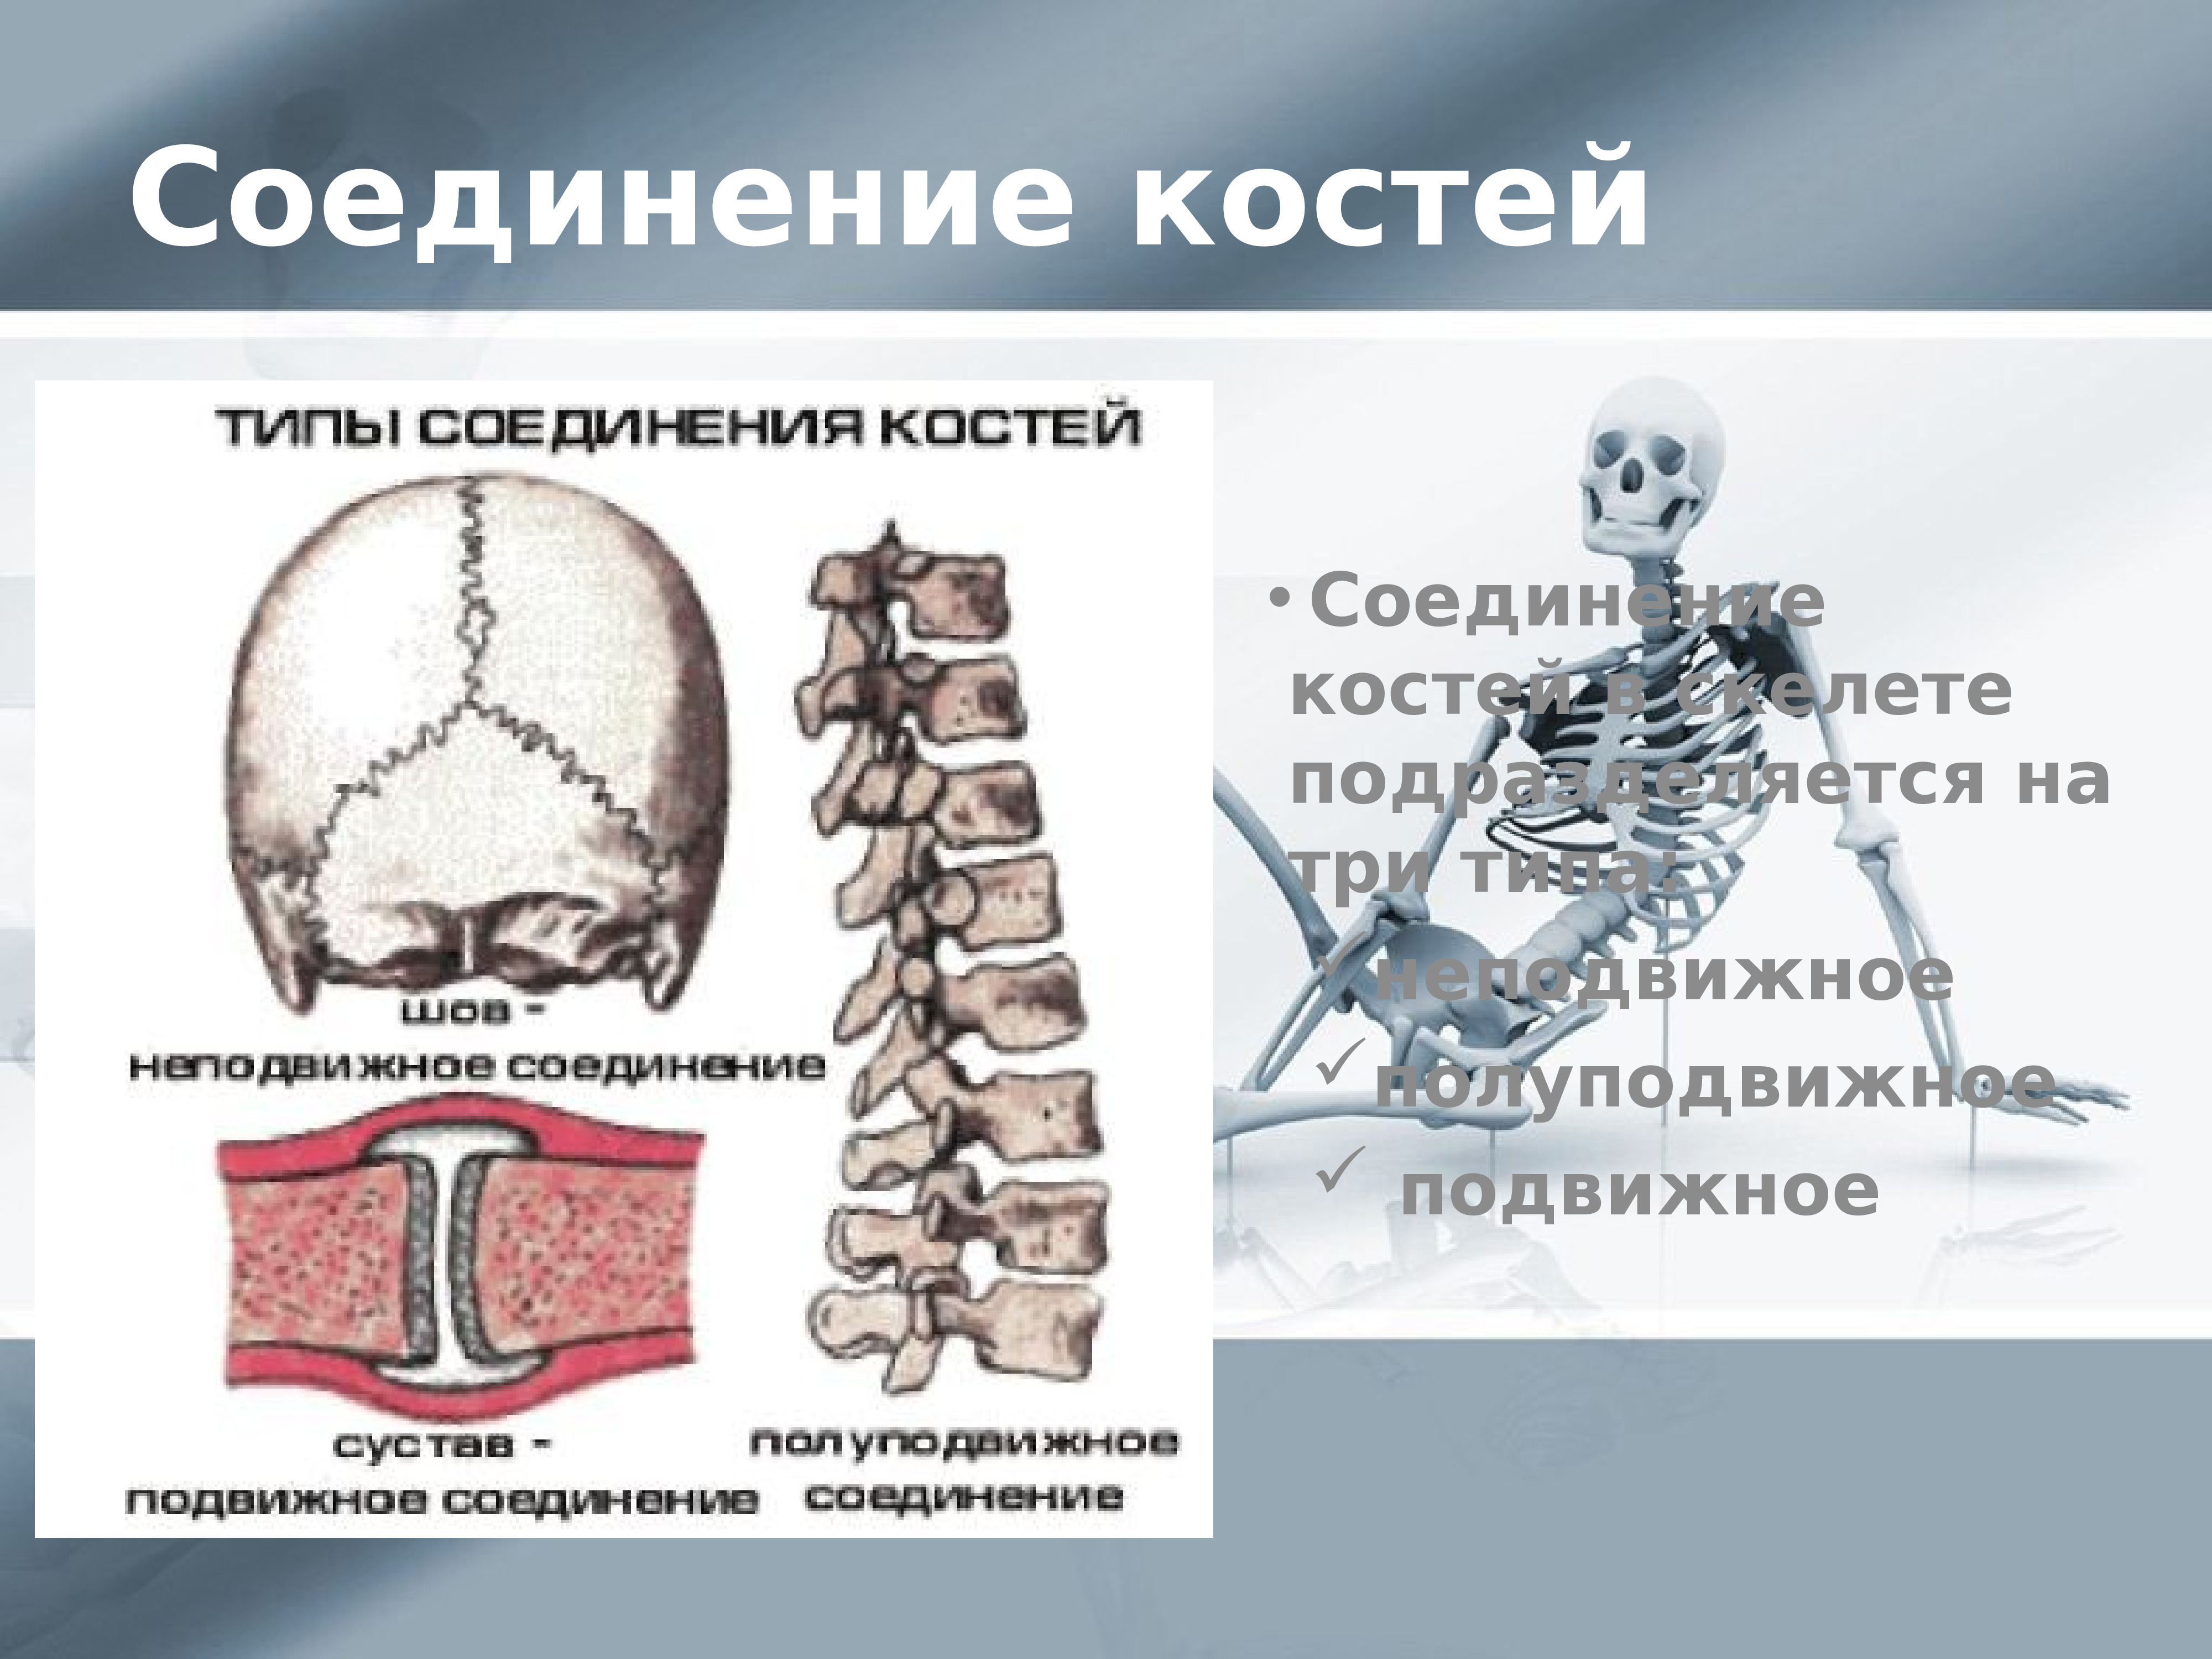 Соединение костей скелета. Подвижные и полуподвижные кости человека. Подвижное соединение костей черепа. Подвижные полуподвижные и неподвижные кости человека таблица.